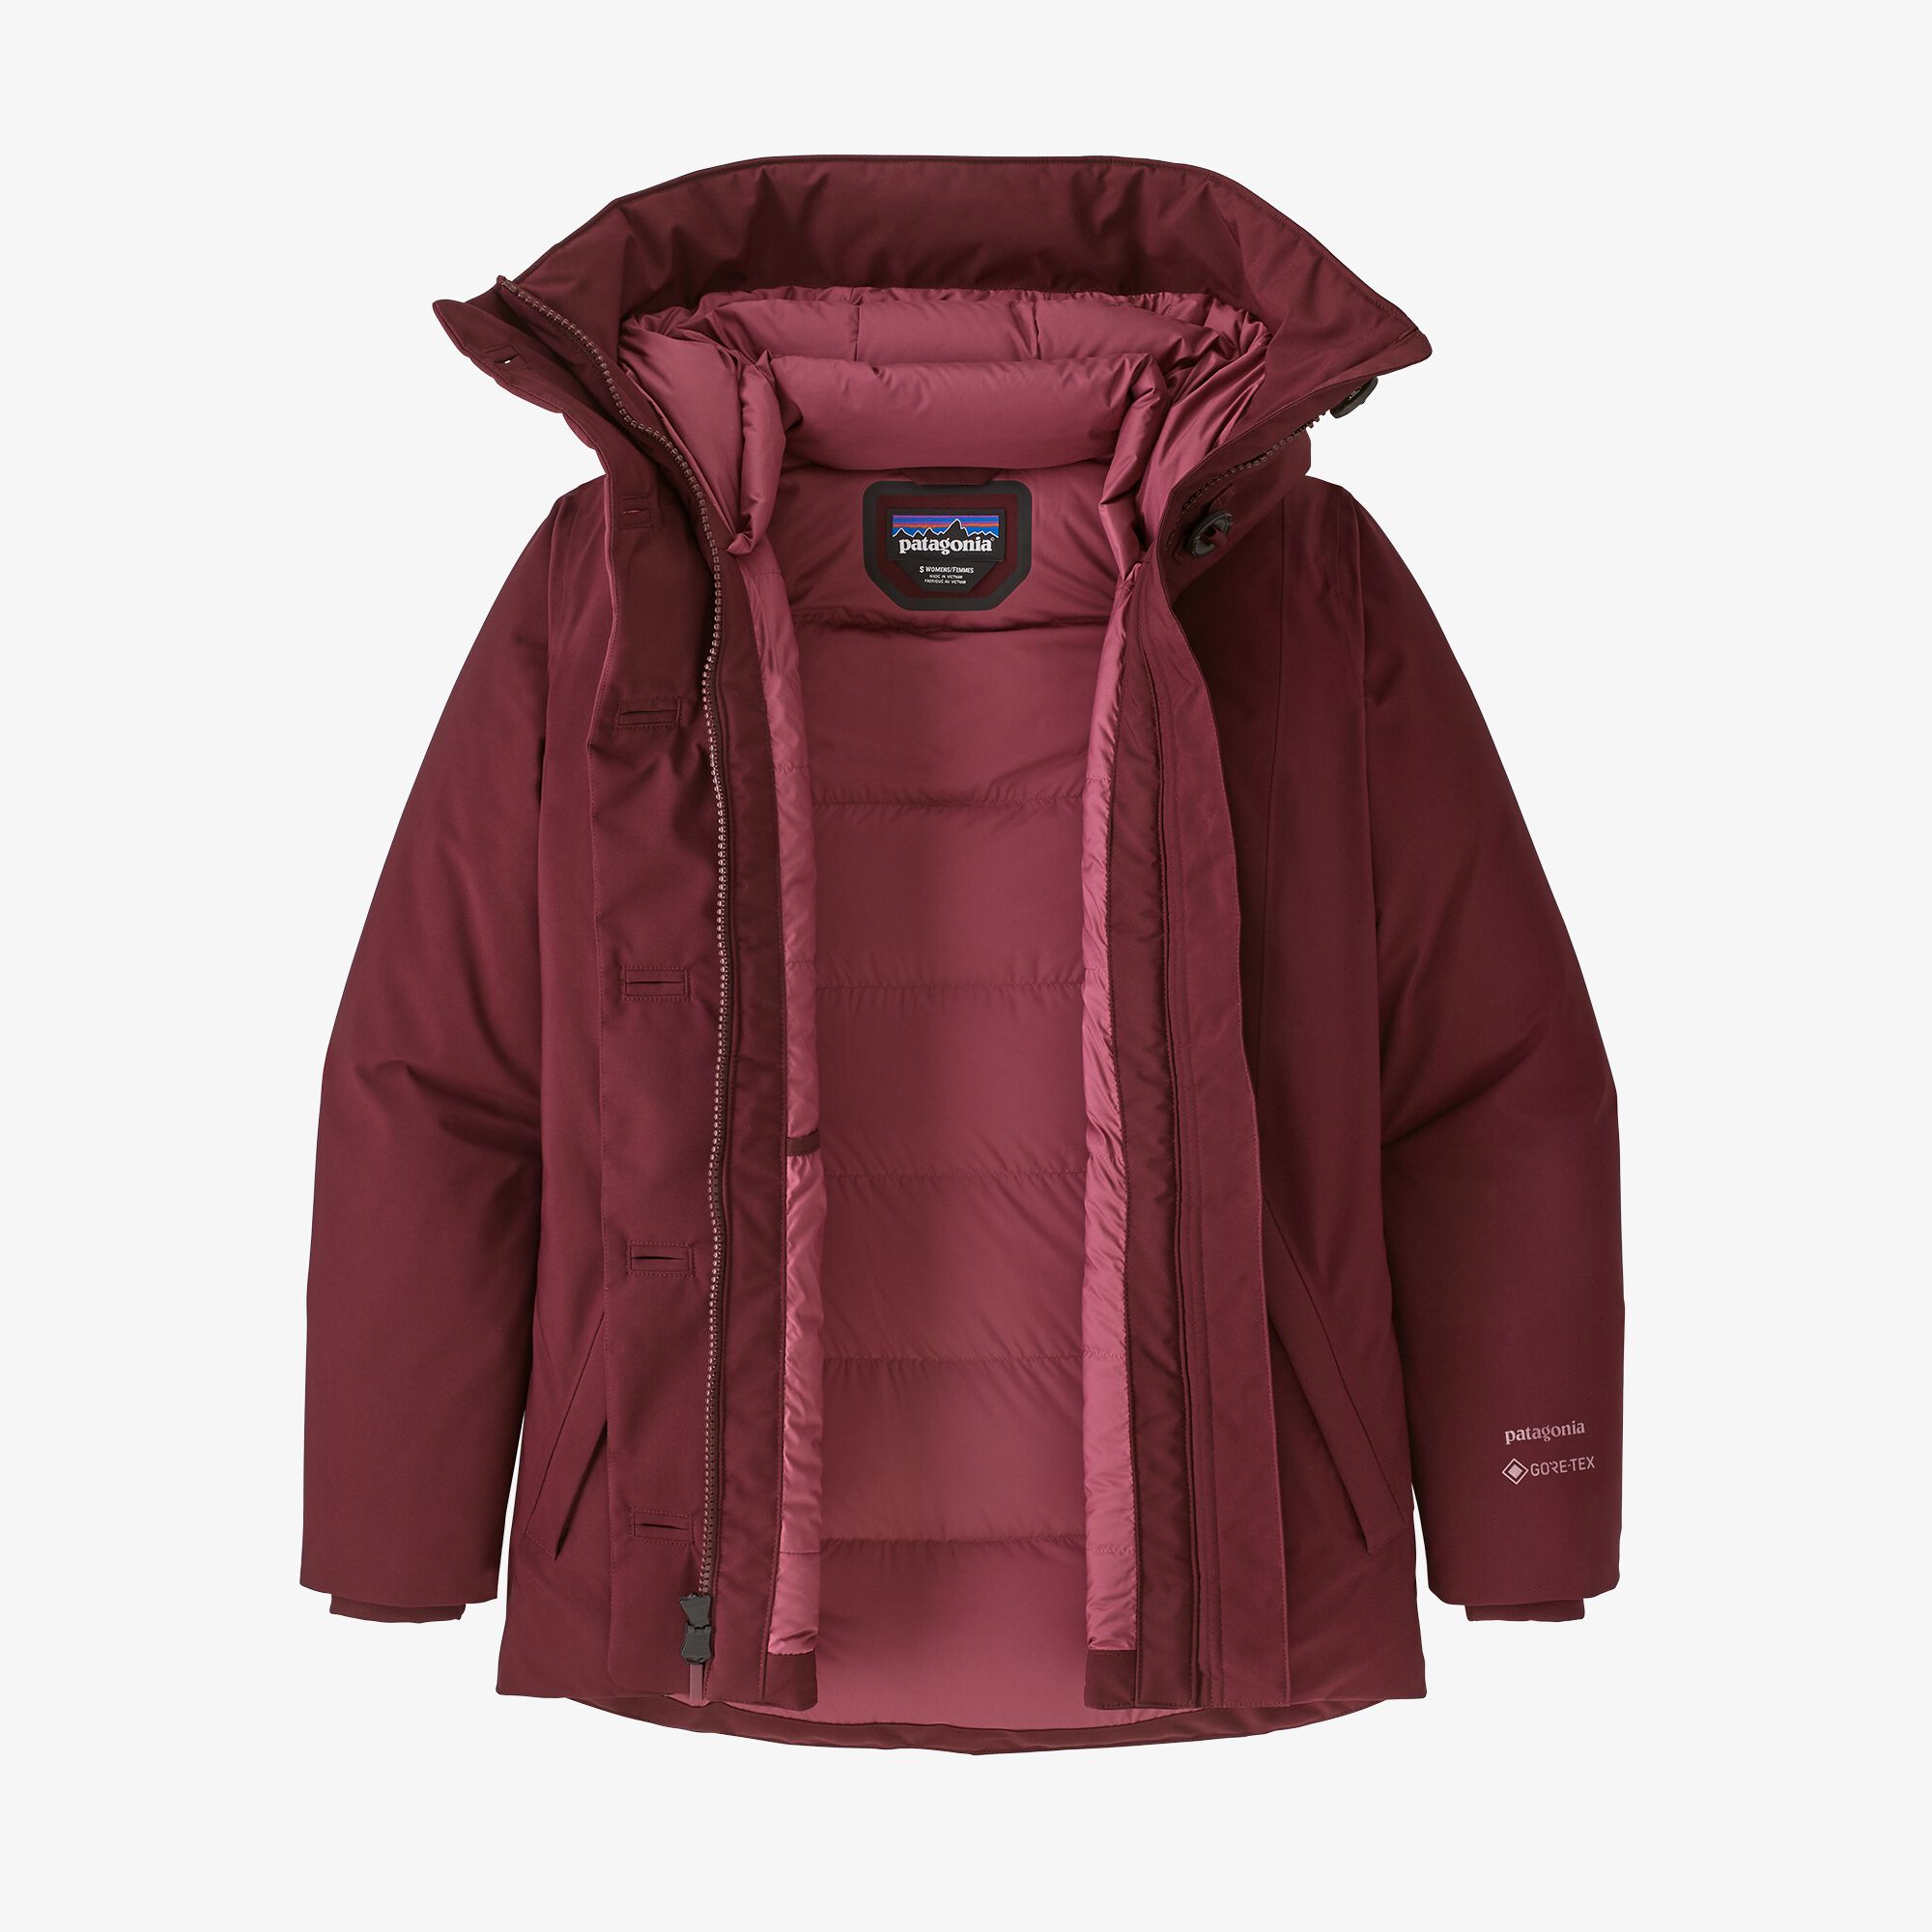 Patagonia Women's Frozen Range Jacket